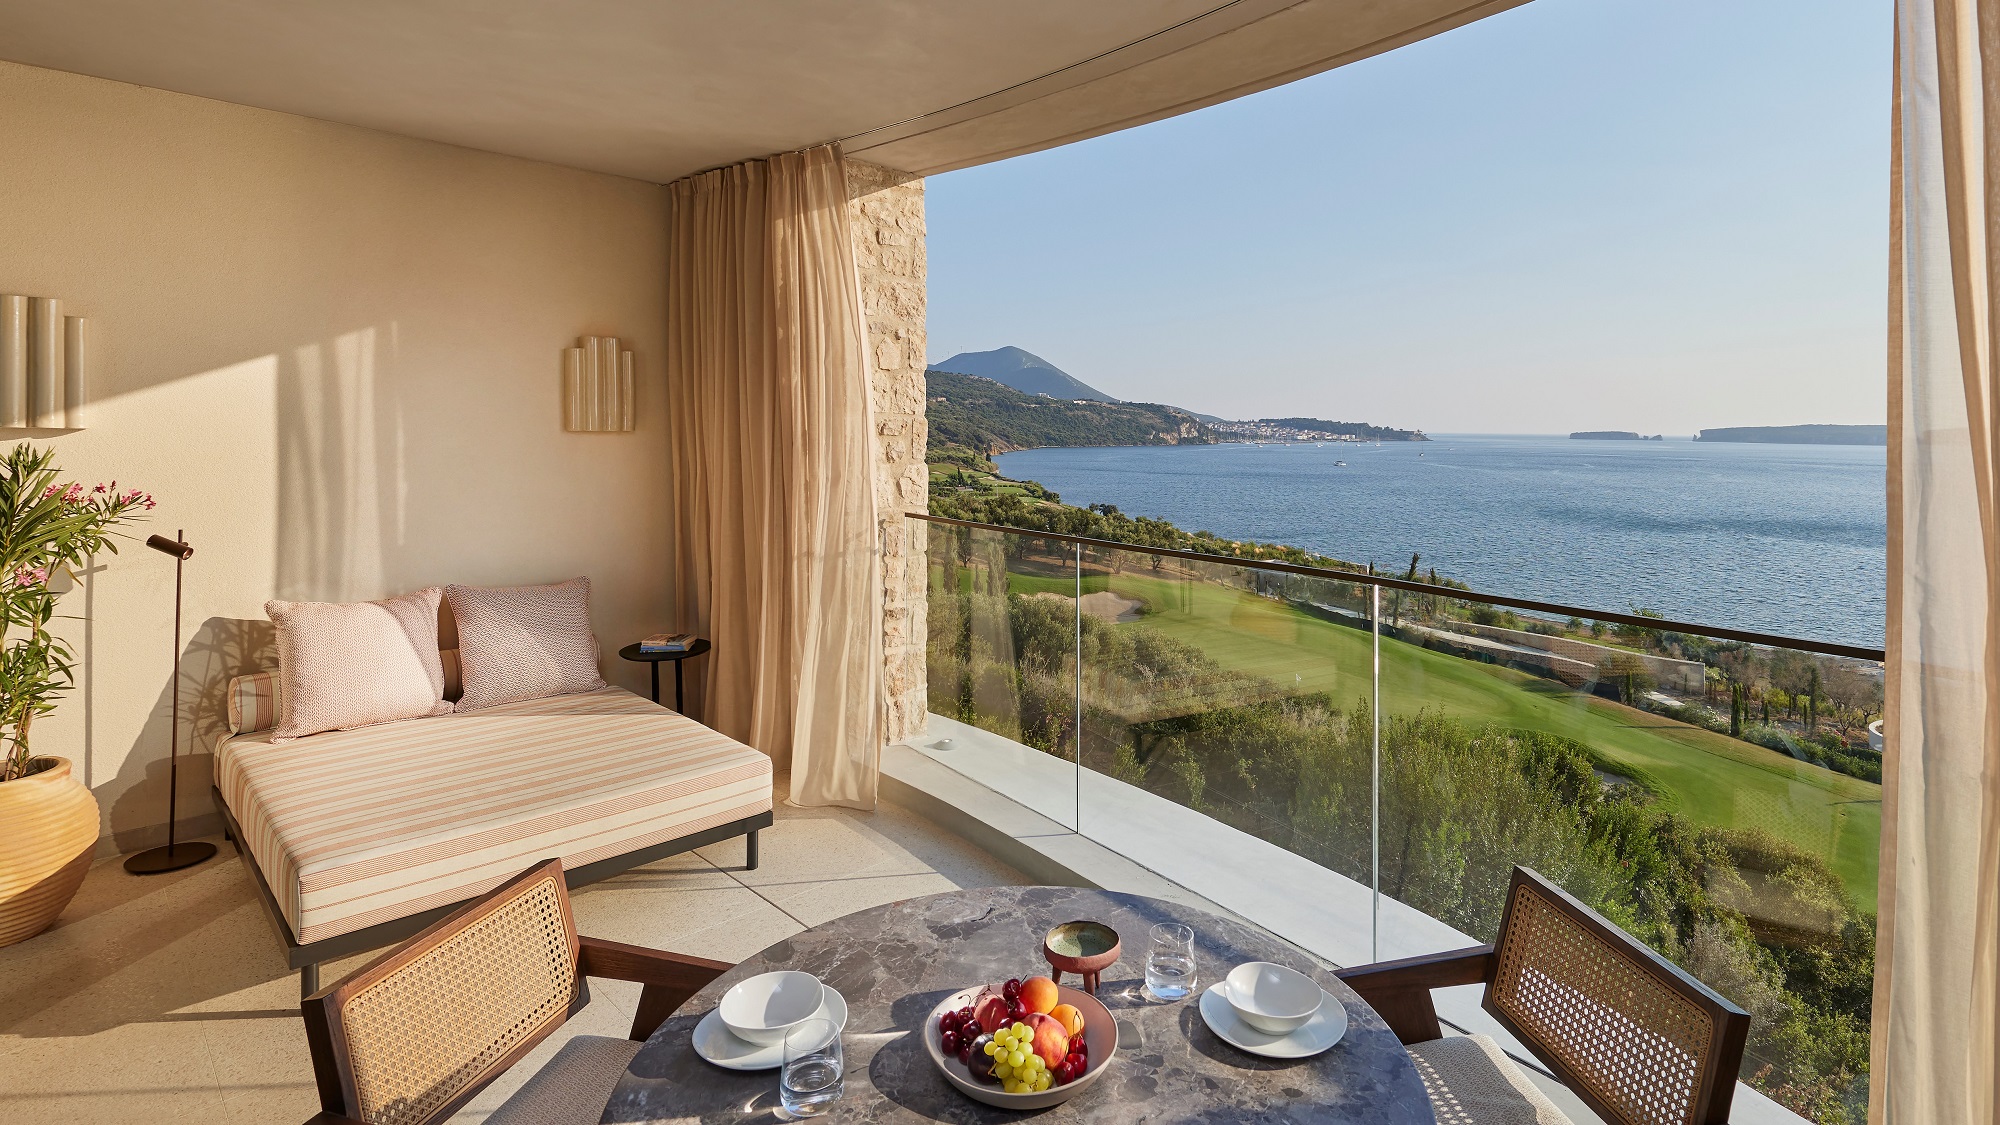 【旅遊】希臘新酒店 擁海島自然美景